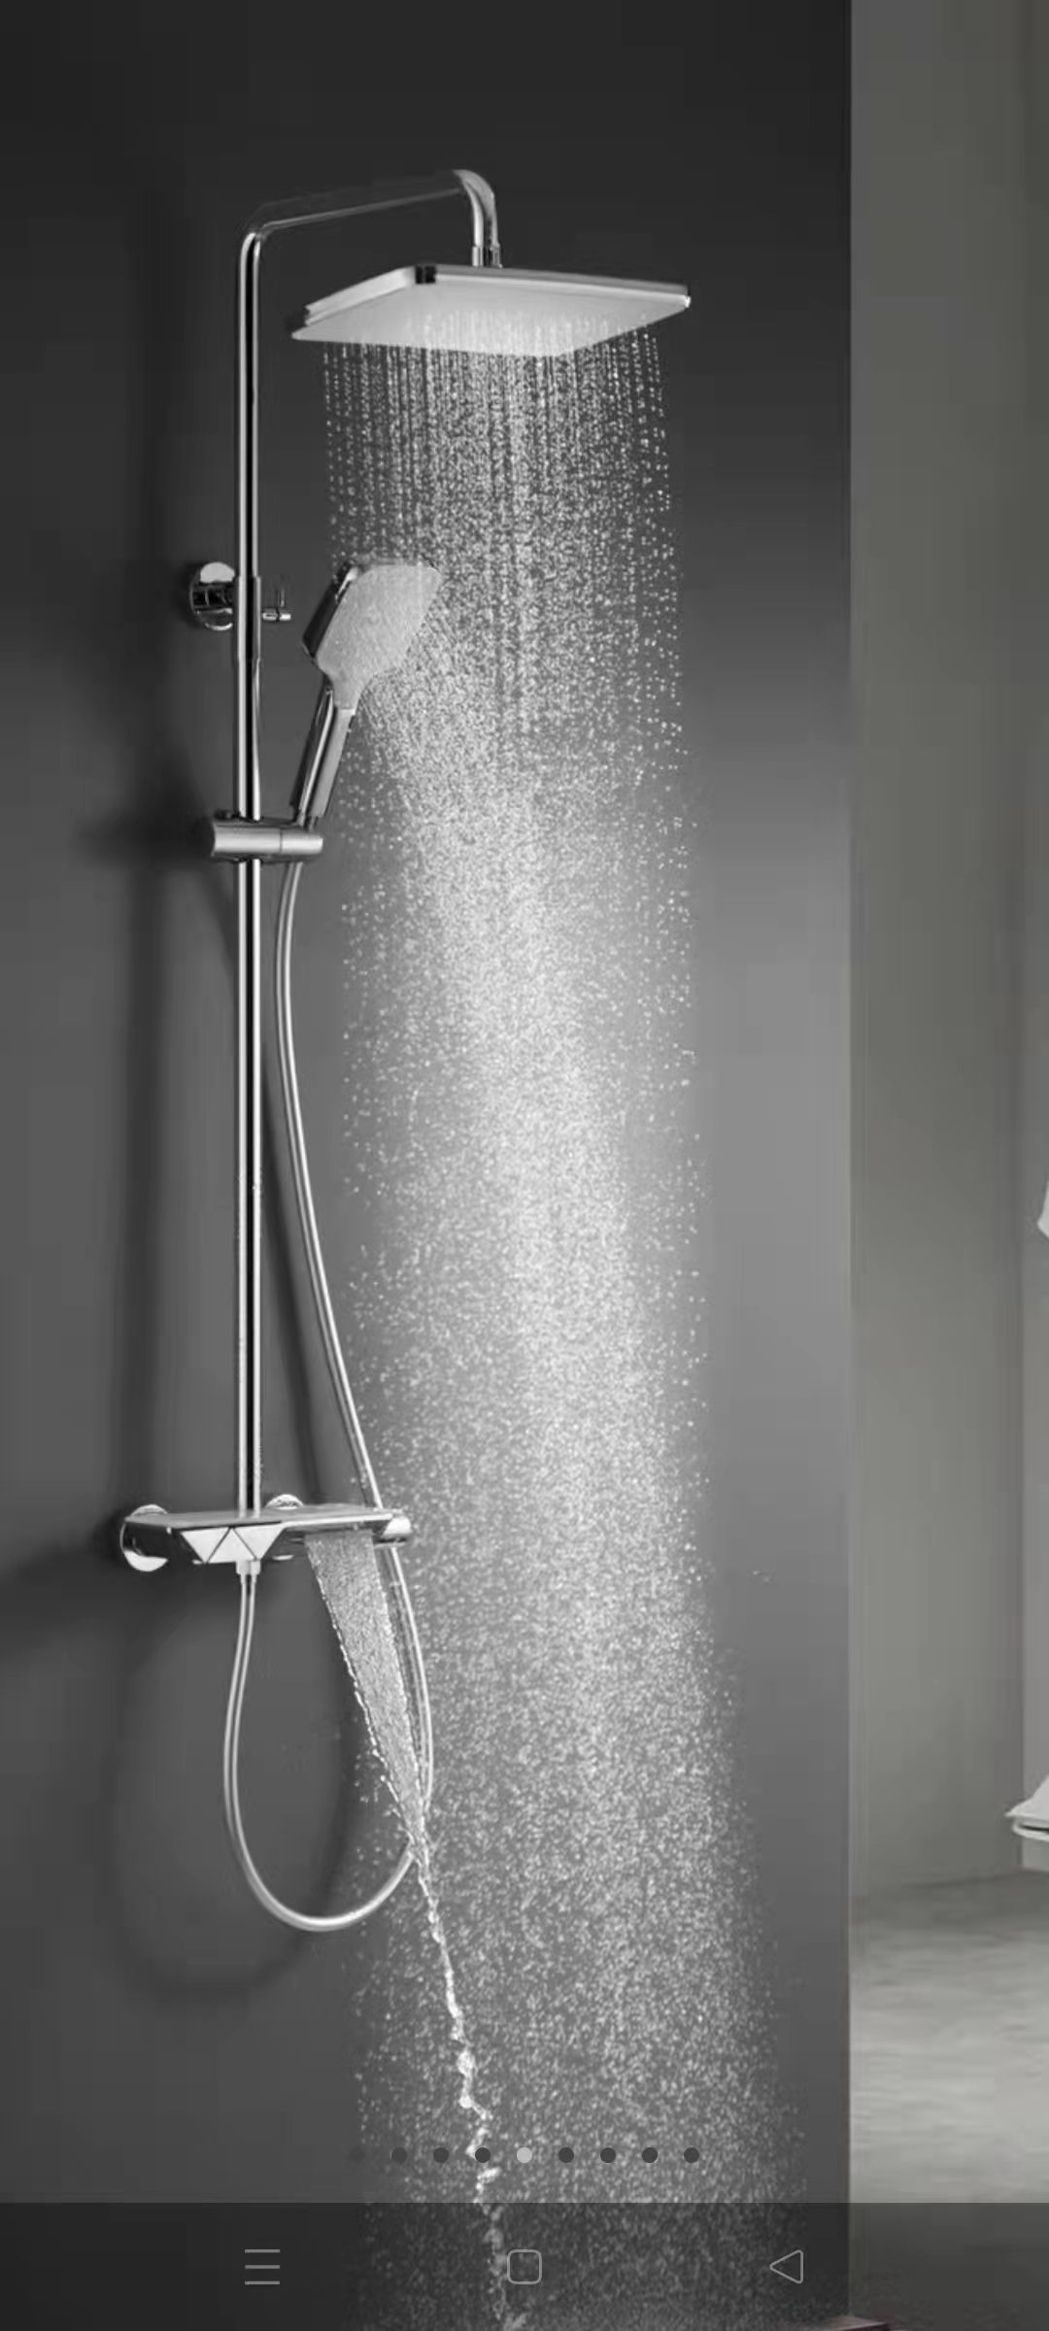 科龍衛浴科技公司創新研製的「按壓式花灑水龍頭」。 科龍衛浴科技／提供